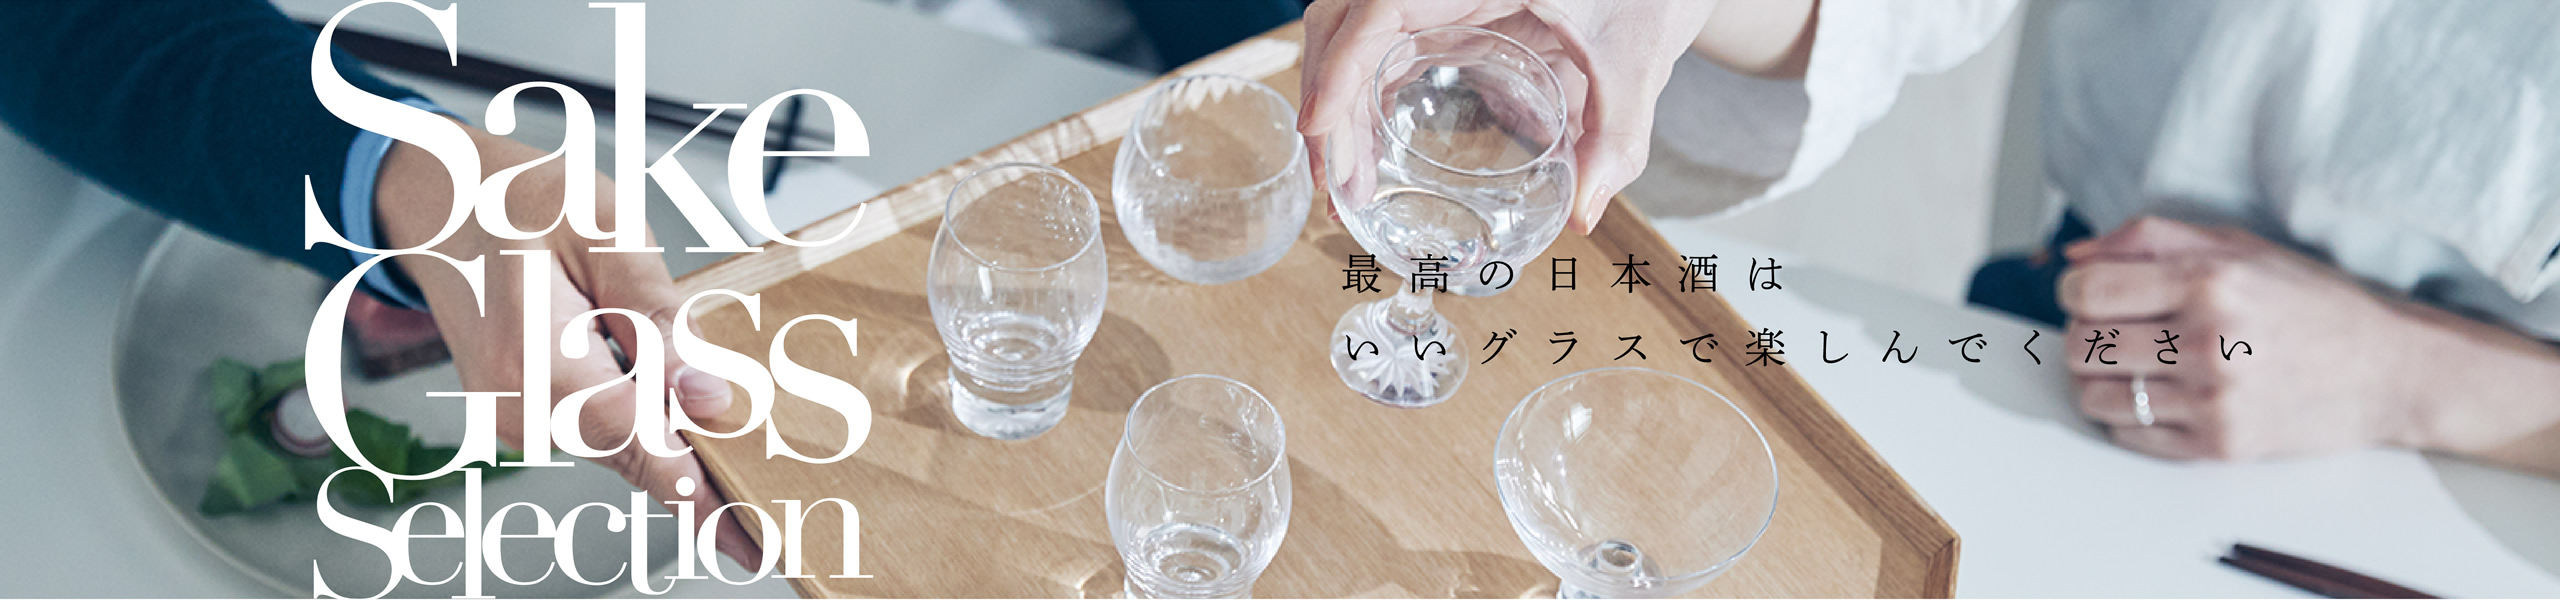 Sake Glass SElection